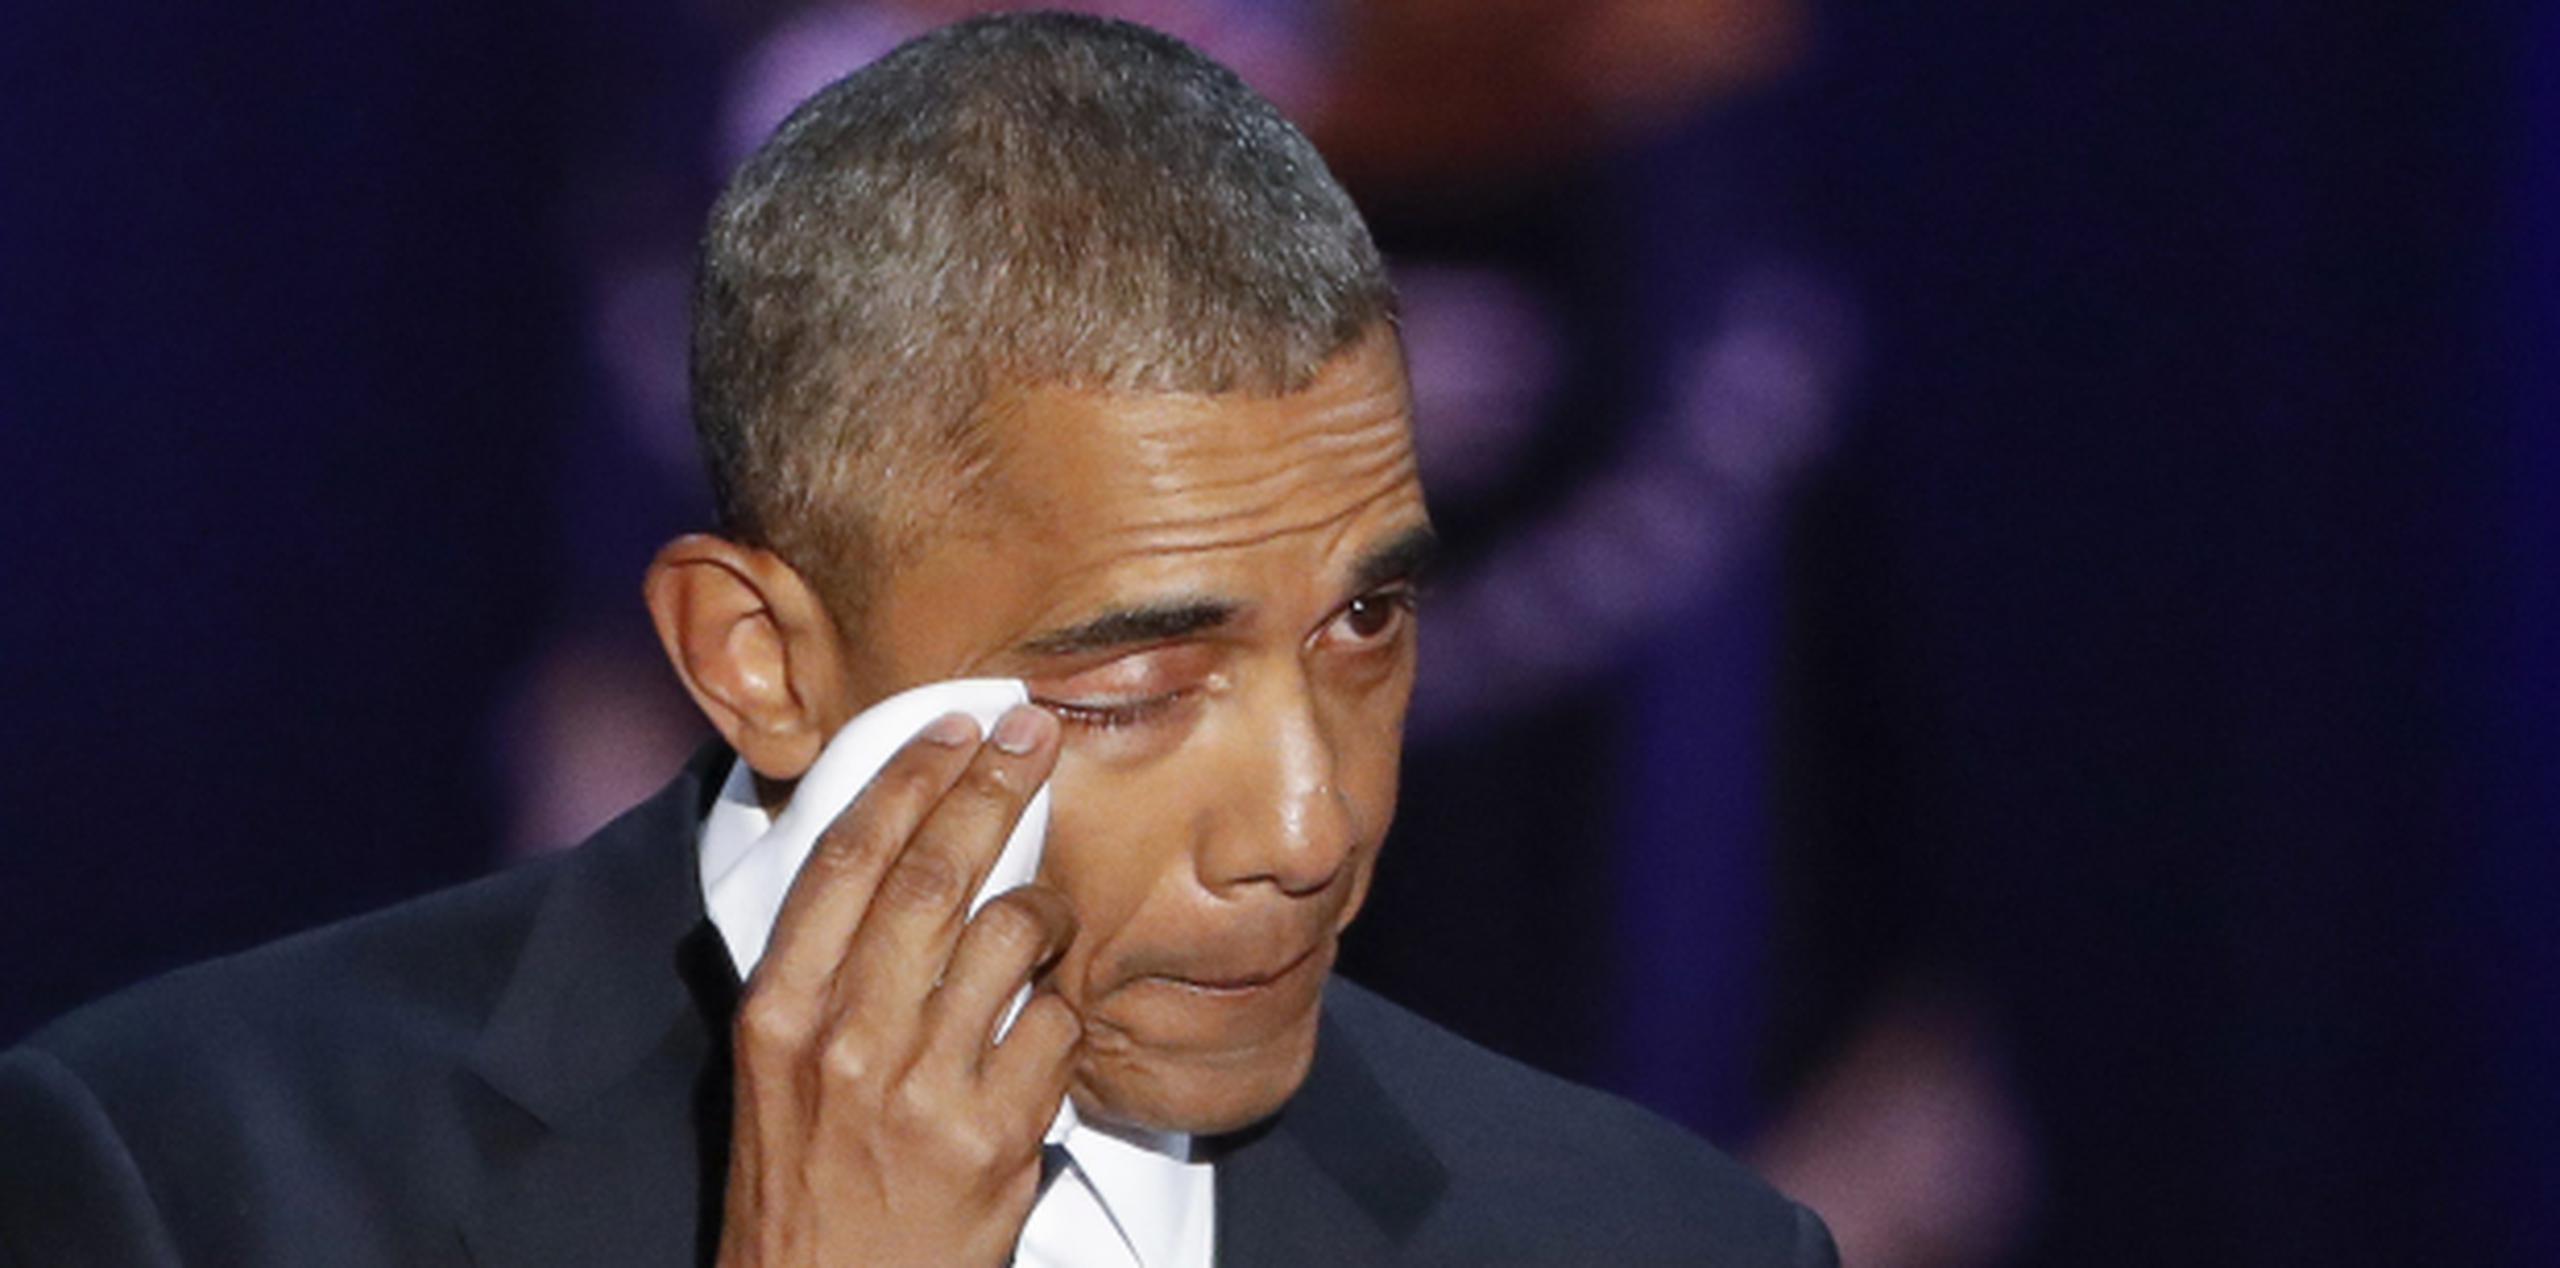 Obama se seca las lágrimas durante su discurso de despedida llevado a cabo ayer en el McCormick Place de Chicago. (EFE/Kamil Krzaczynski)